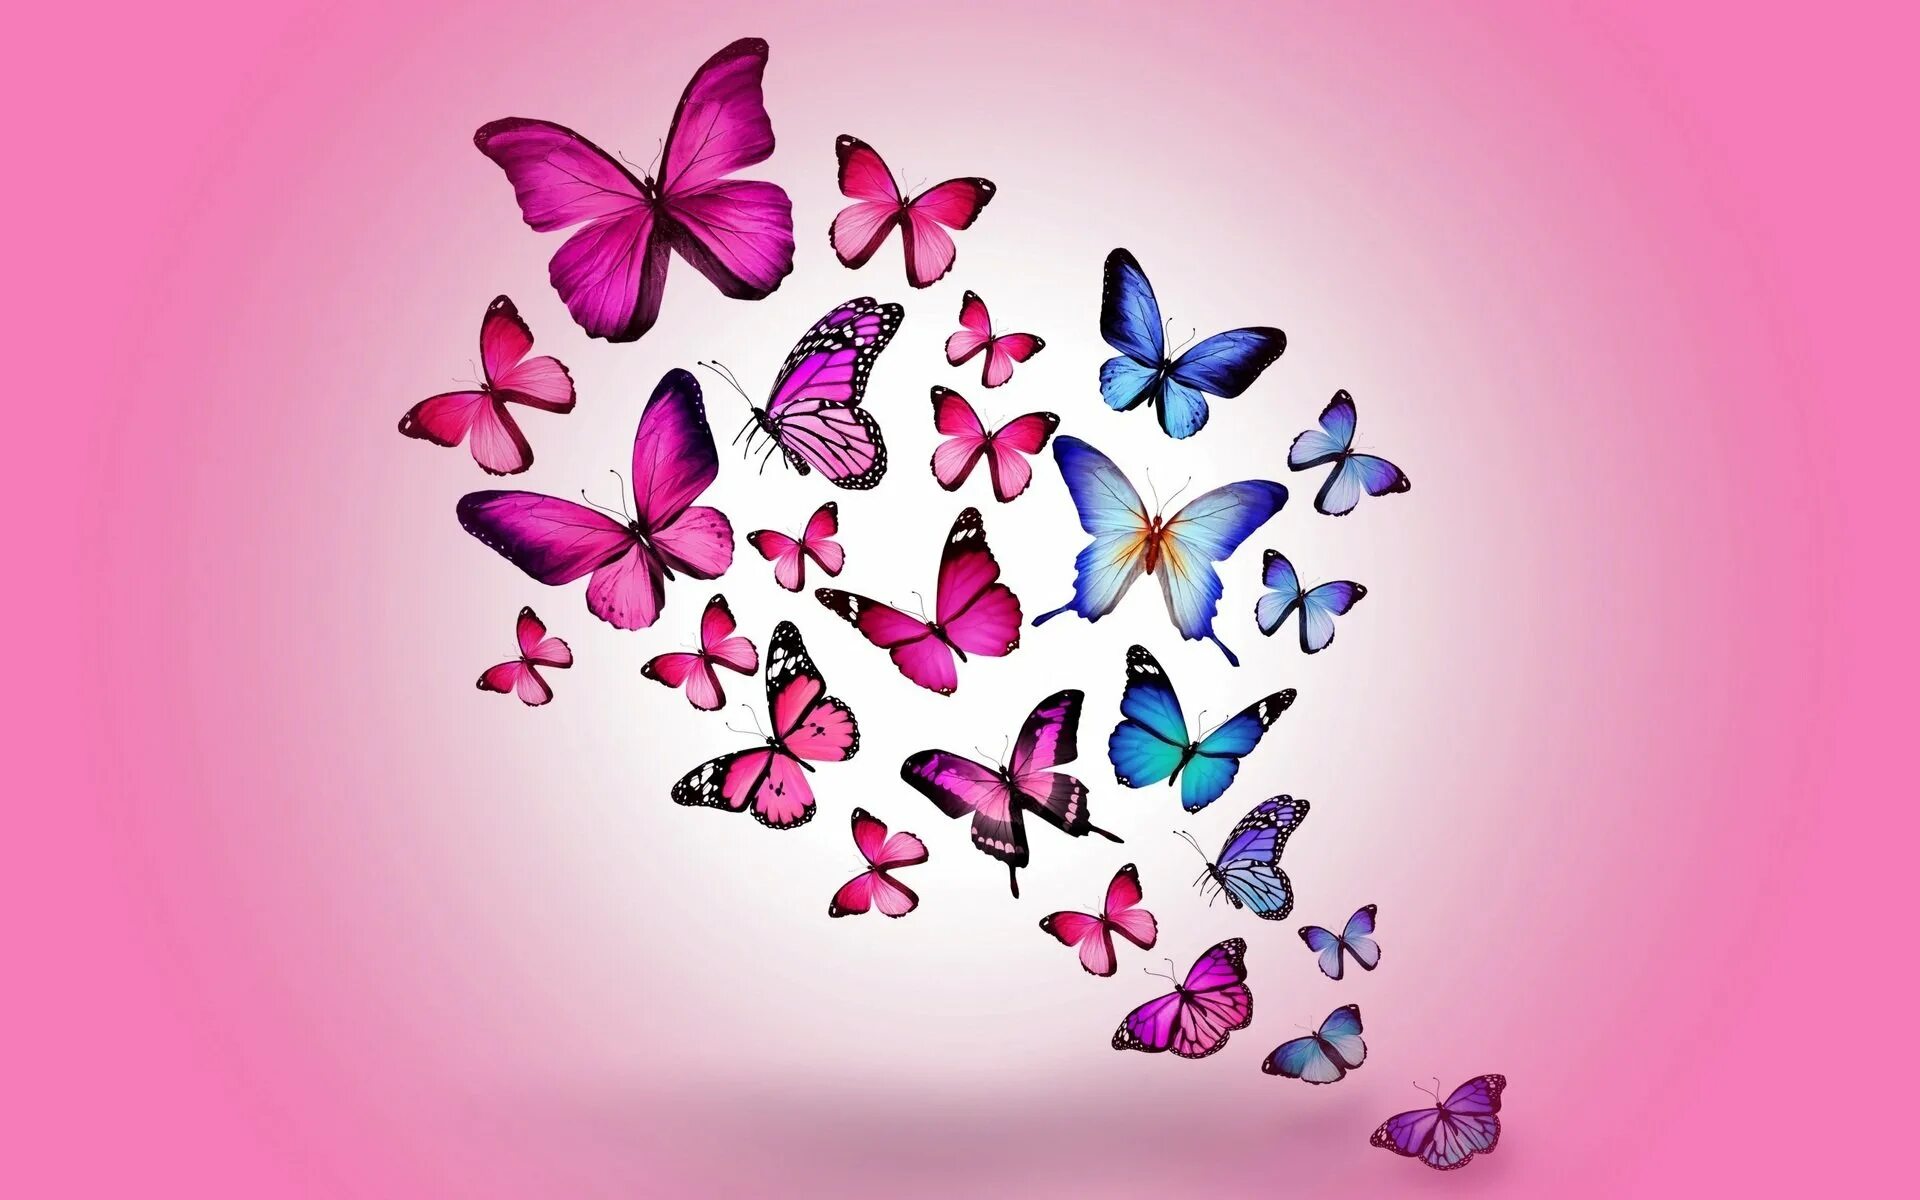 Обои фон бабочка. Бабочки. Обои с бабочками. Фон бабочки. Розовые бабочки.